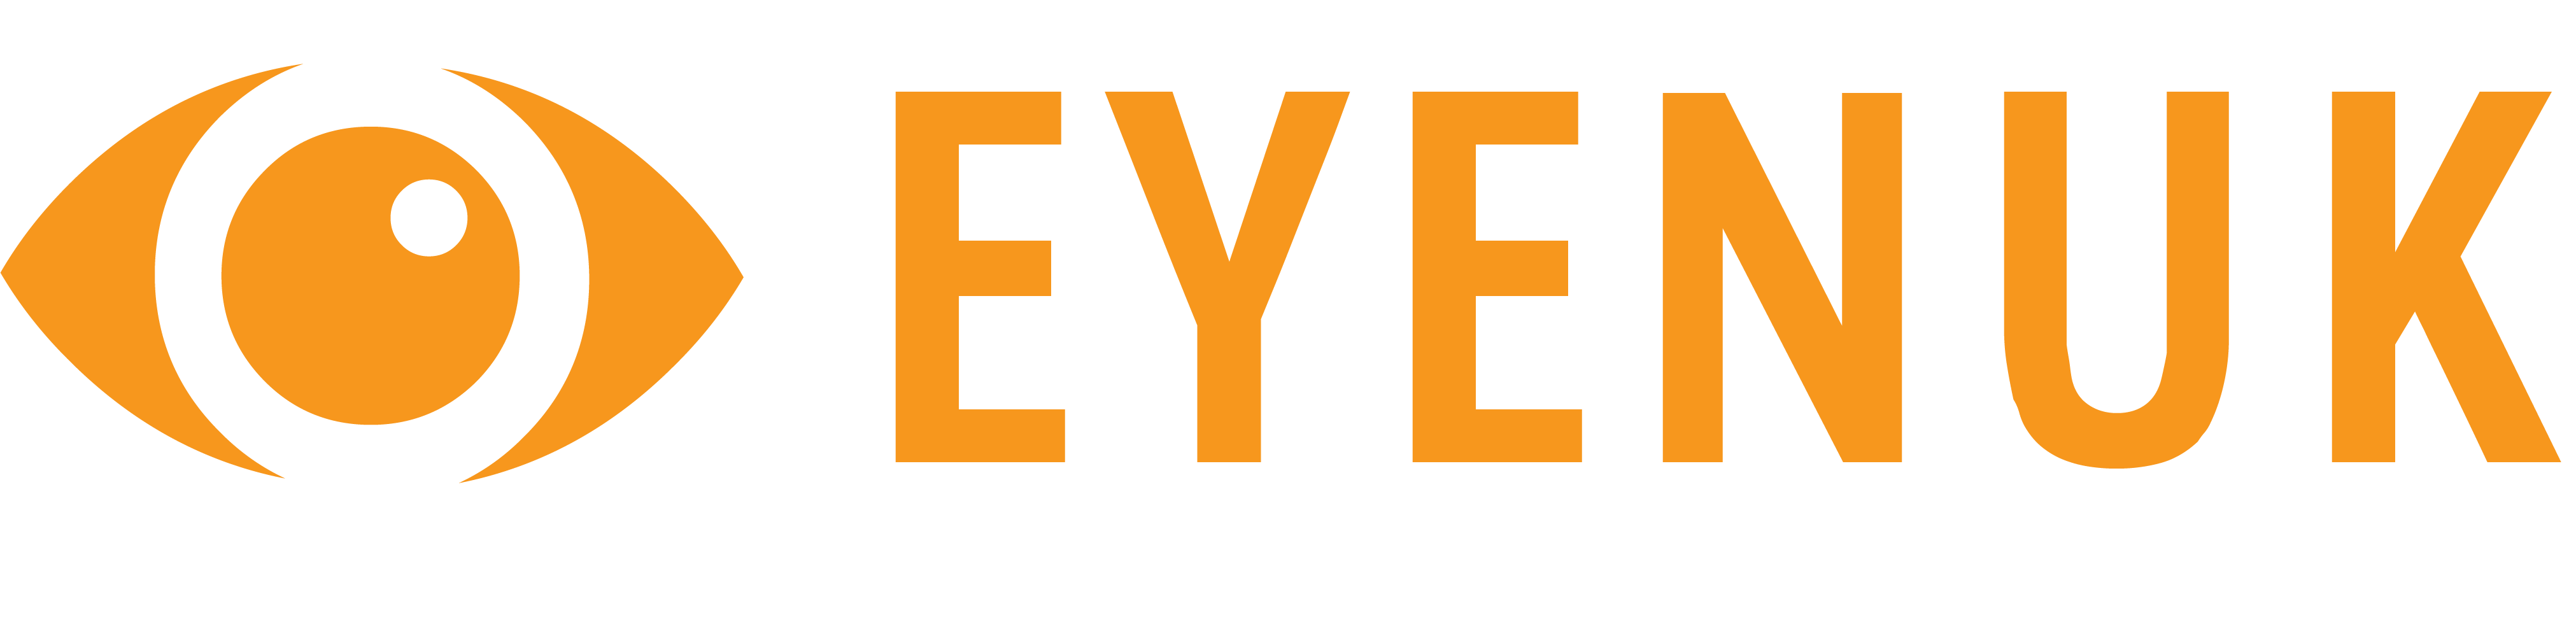 eyenuk logo orange